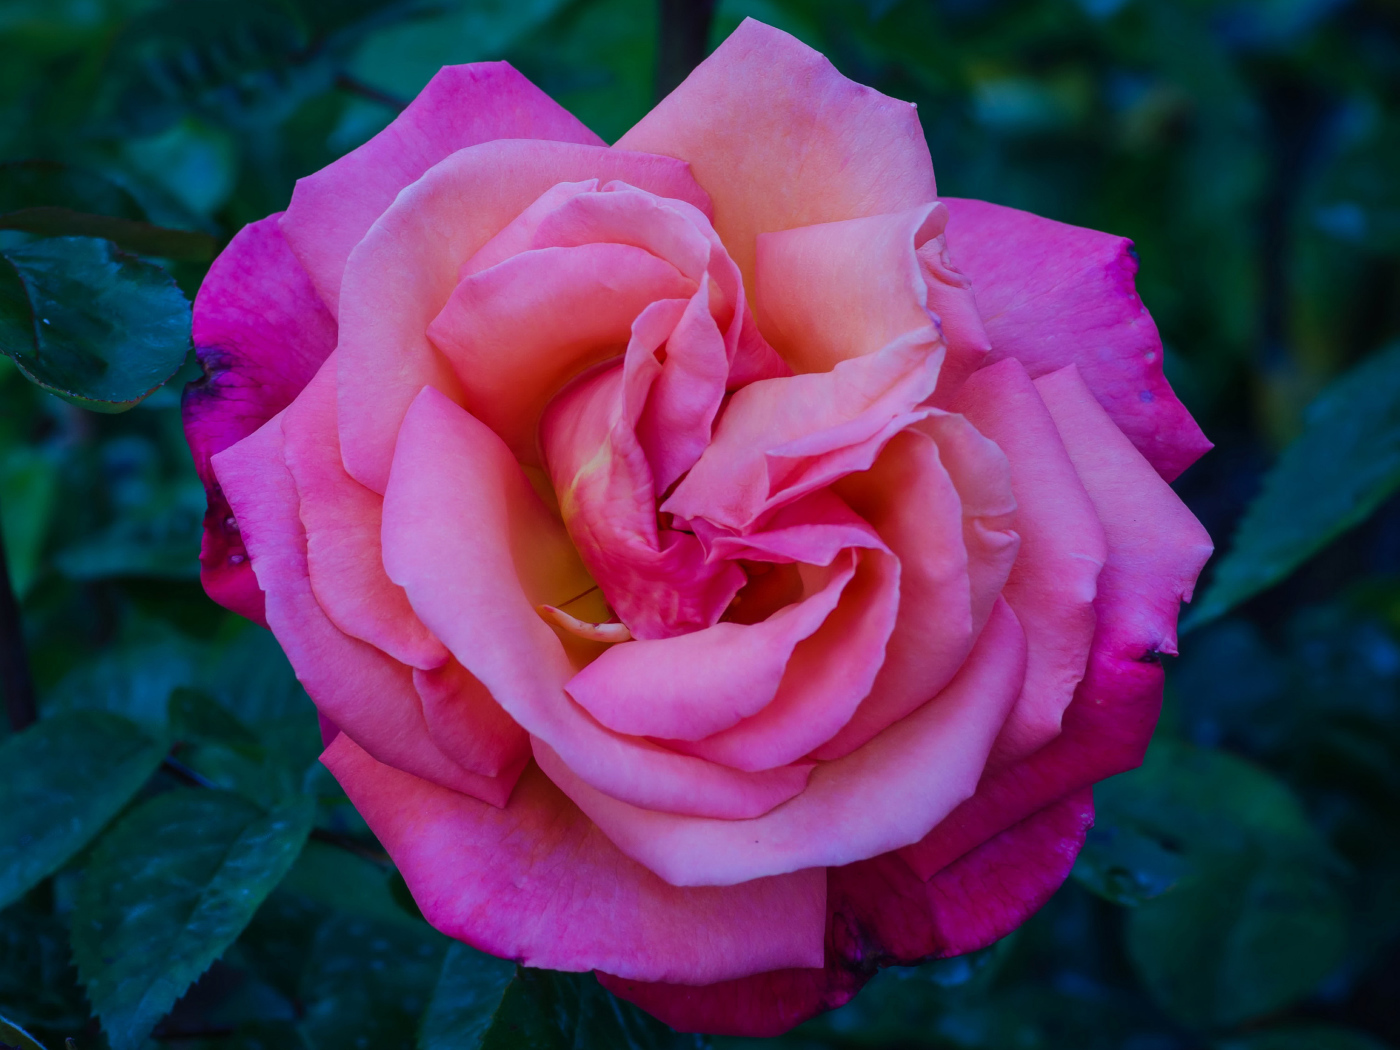 Beautiful pink rose garden close up